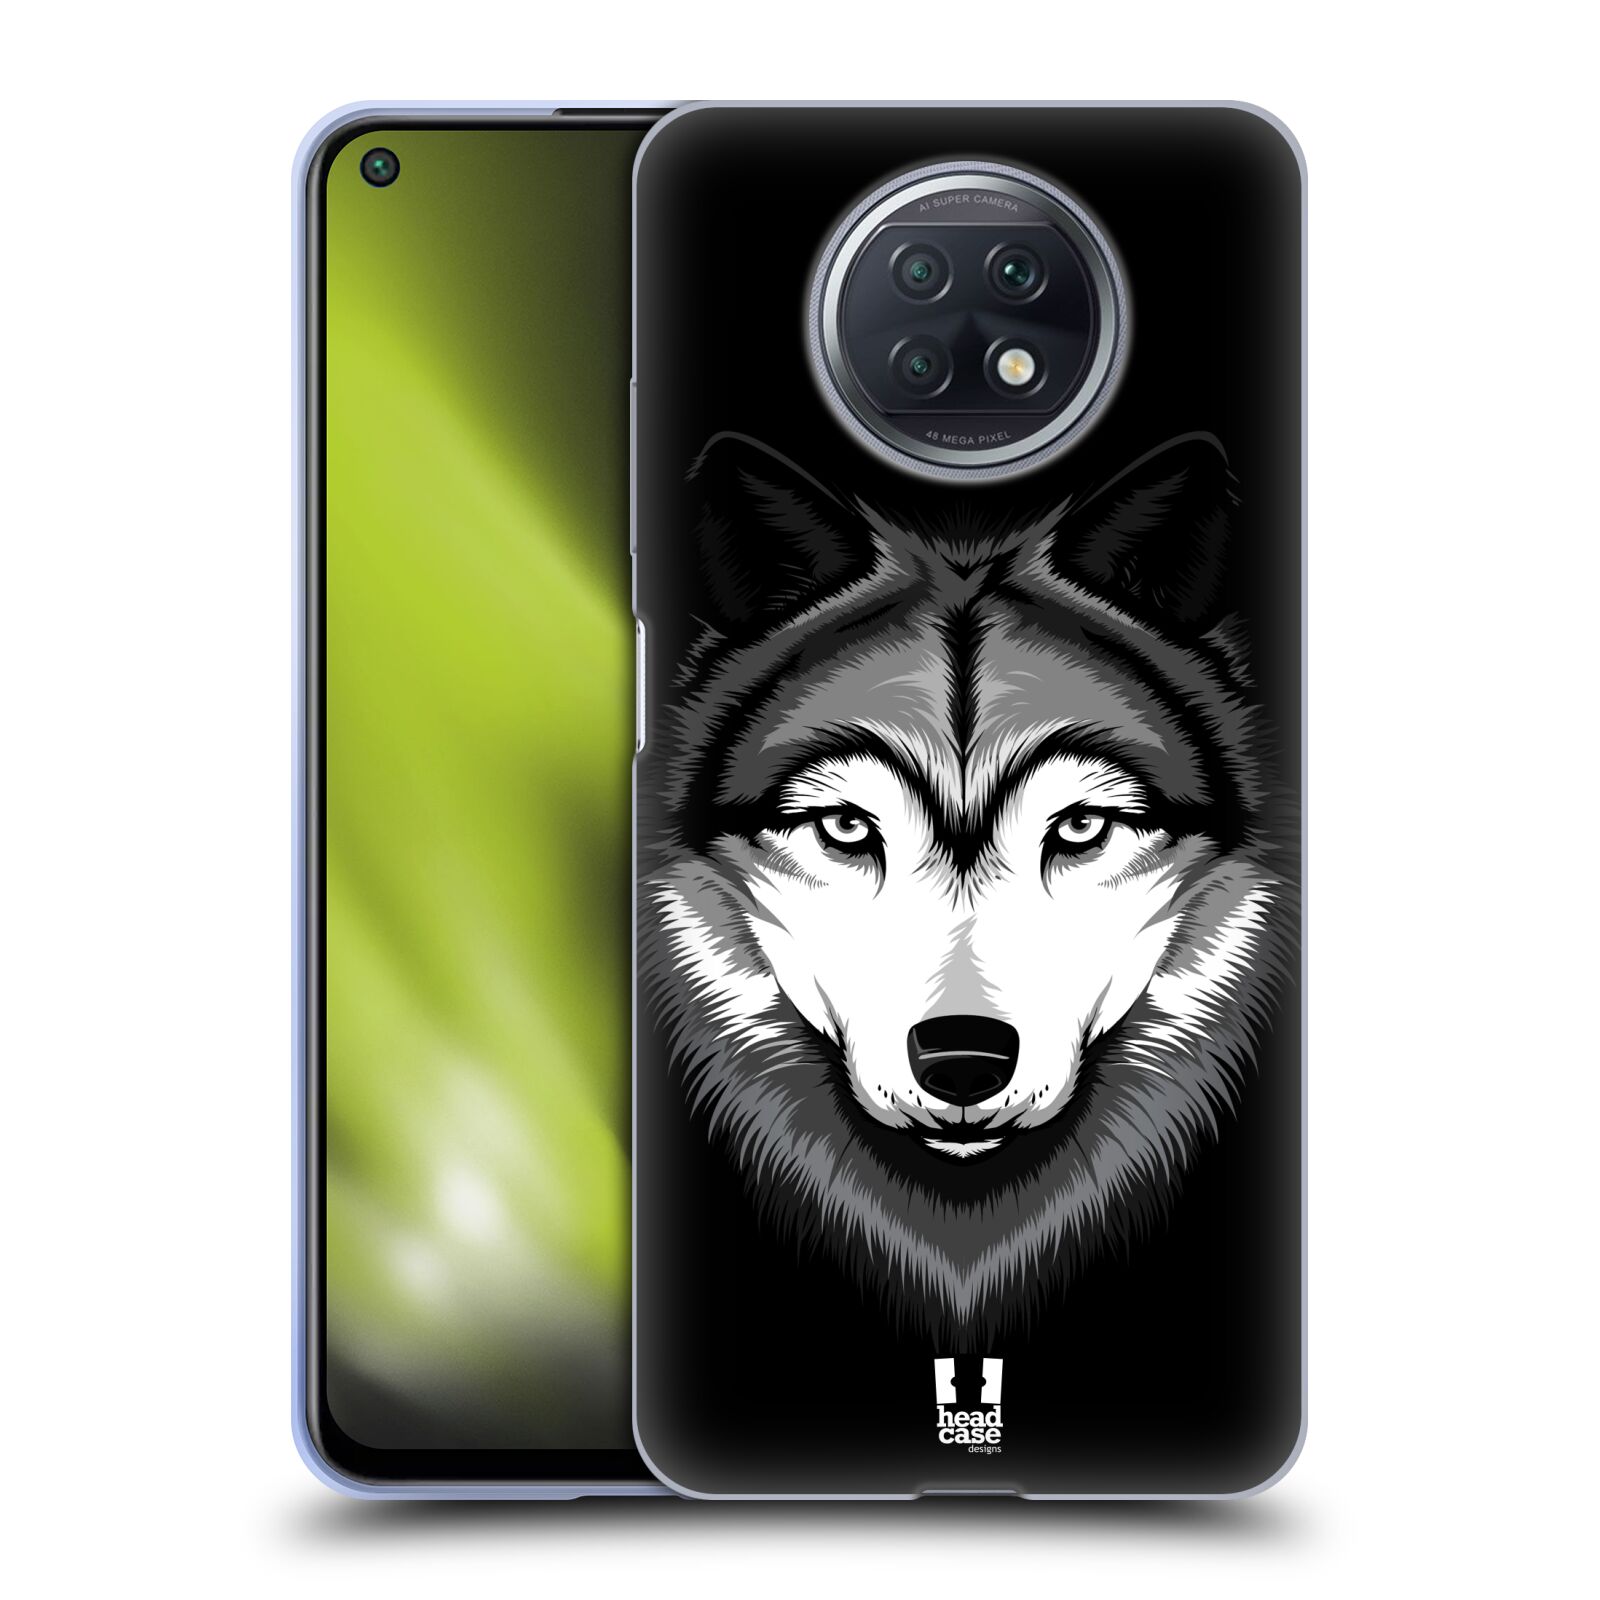 Plastový obal HEAD CASE na mobil Xiaomi Redmi Note 9T vzor Zvíře kreslená tvář 2 vlk